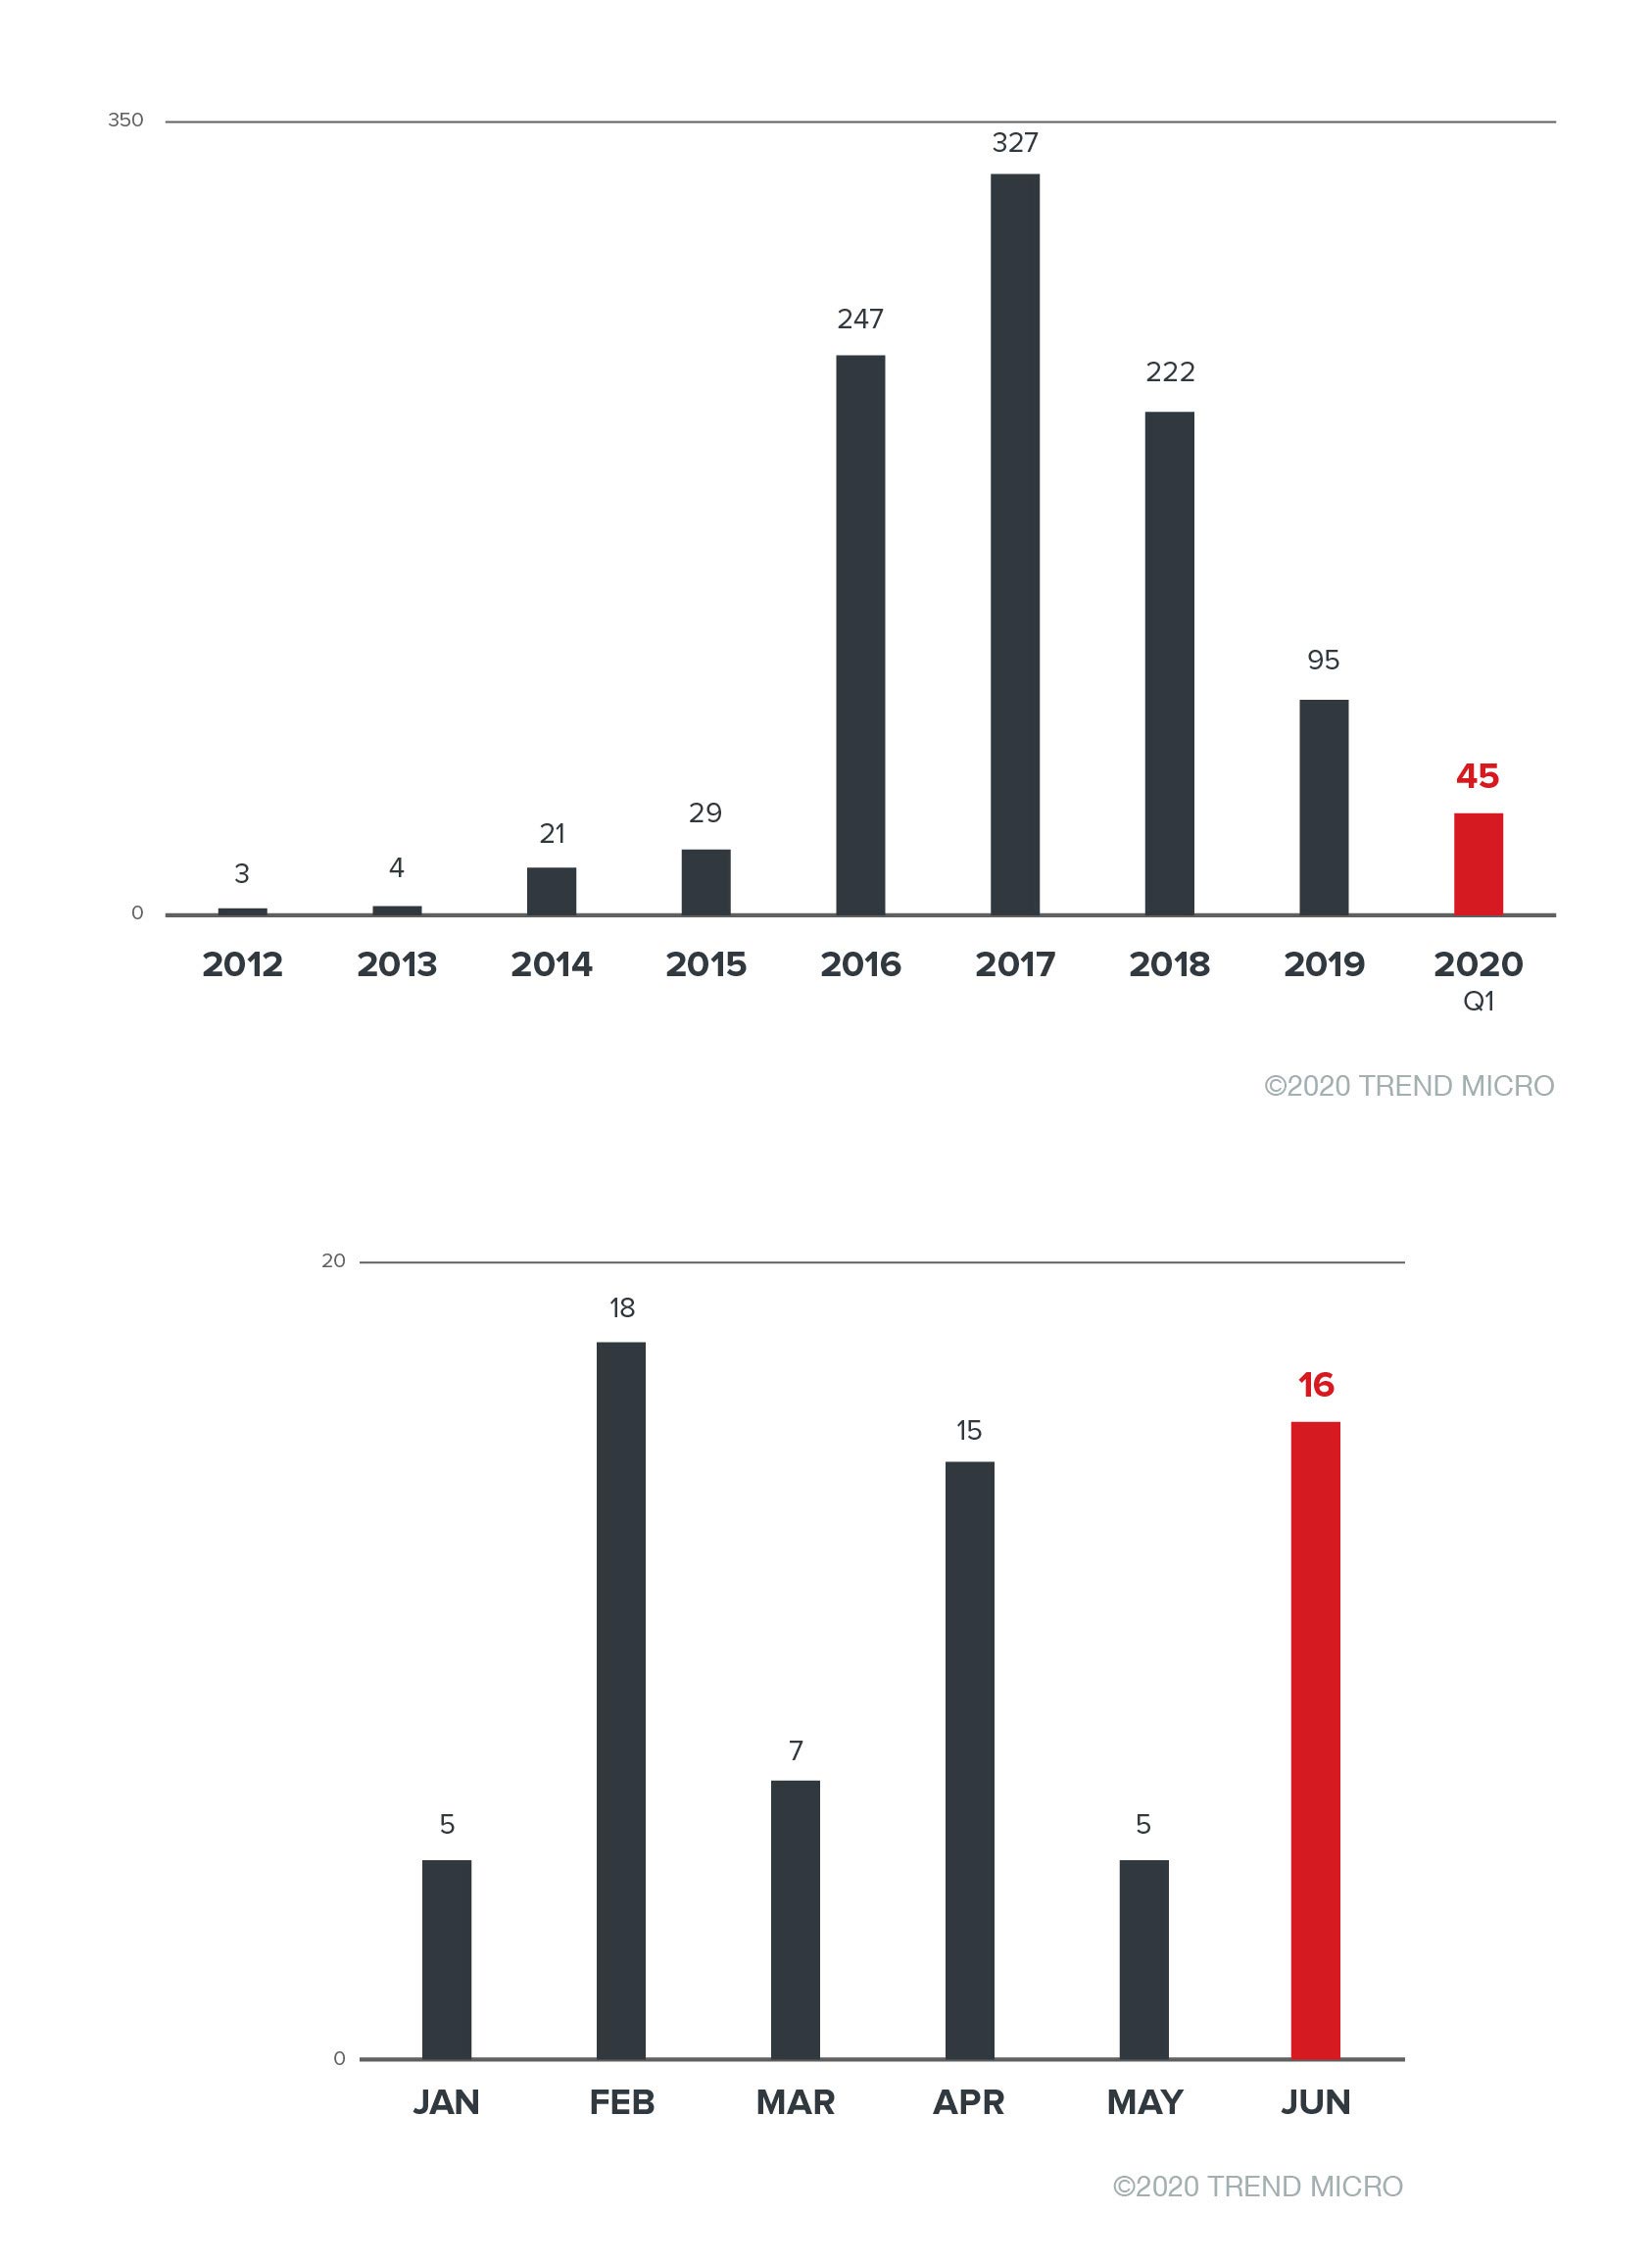 Bild 1. Die Gesamtzahl der Ransomware-Familien ist von 2012 bis 2020 zurückgegangen (oben). Das zeigen die monatlichen Erkennungszahlen für neue Ransomware-Familien im ersten Halbjahr 2020 (unten).